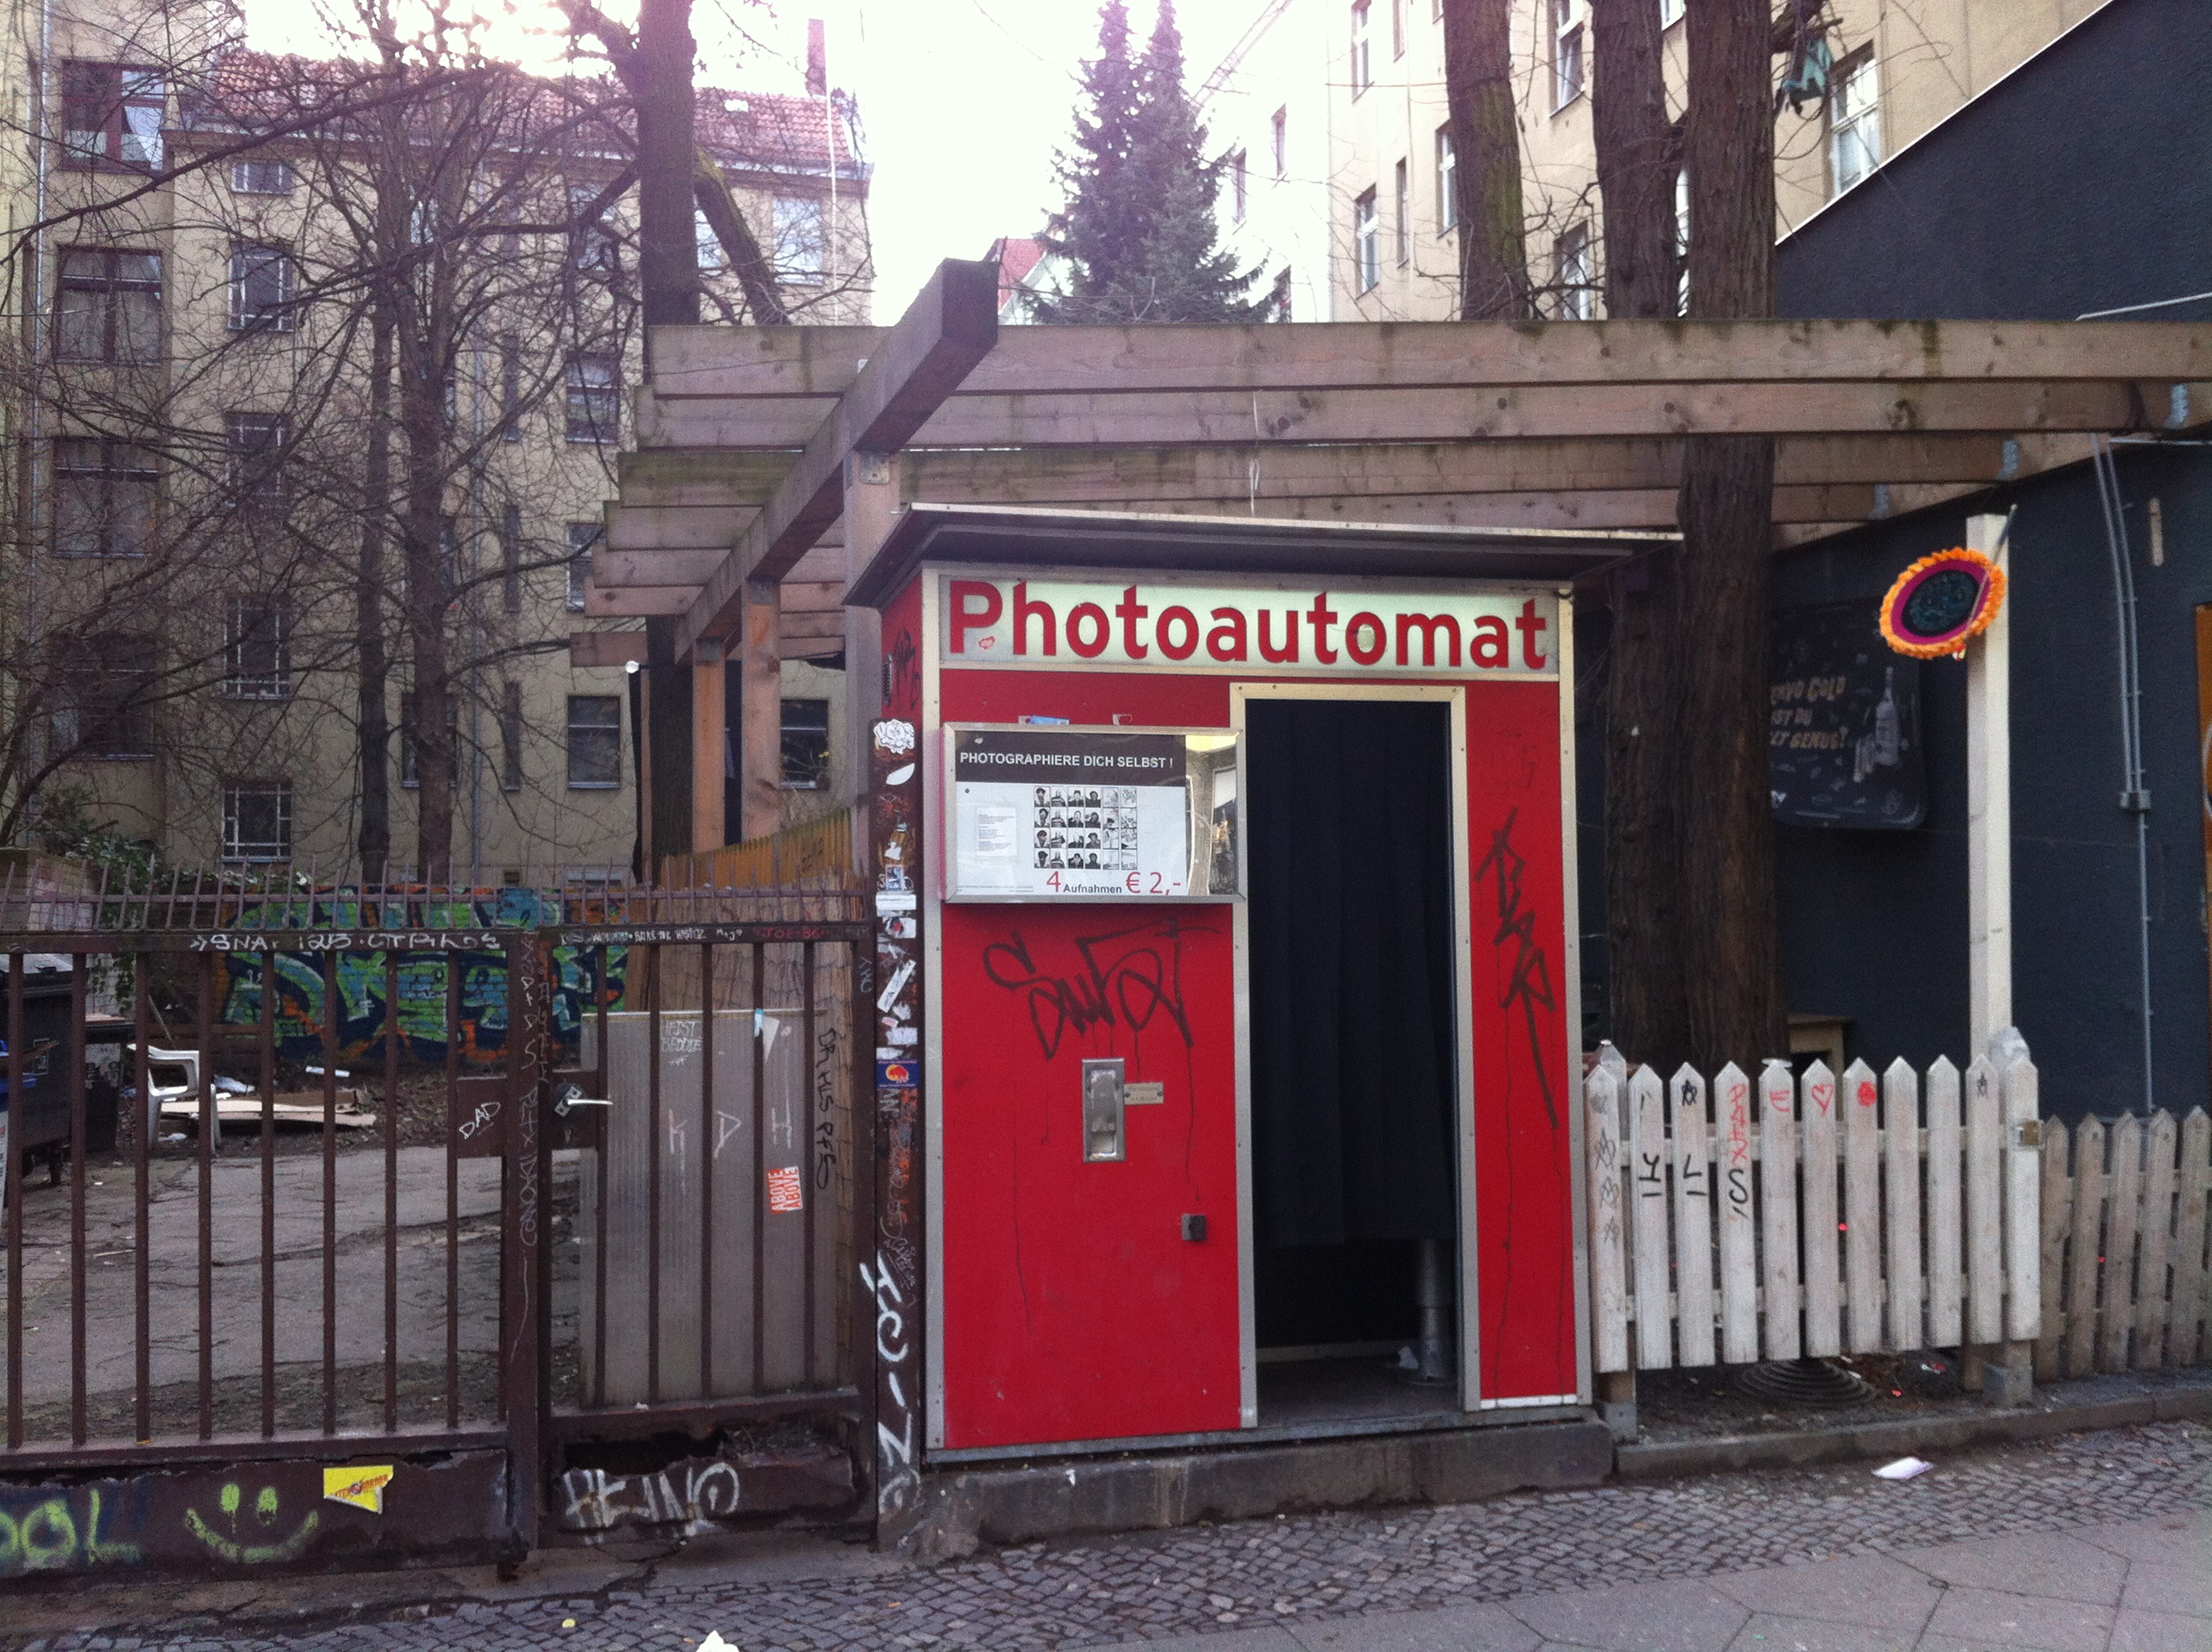 Am Fotoautomaten kann man für ein paar Euros alte Passfoto-Zeiten aufleben lassen.